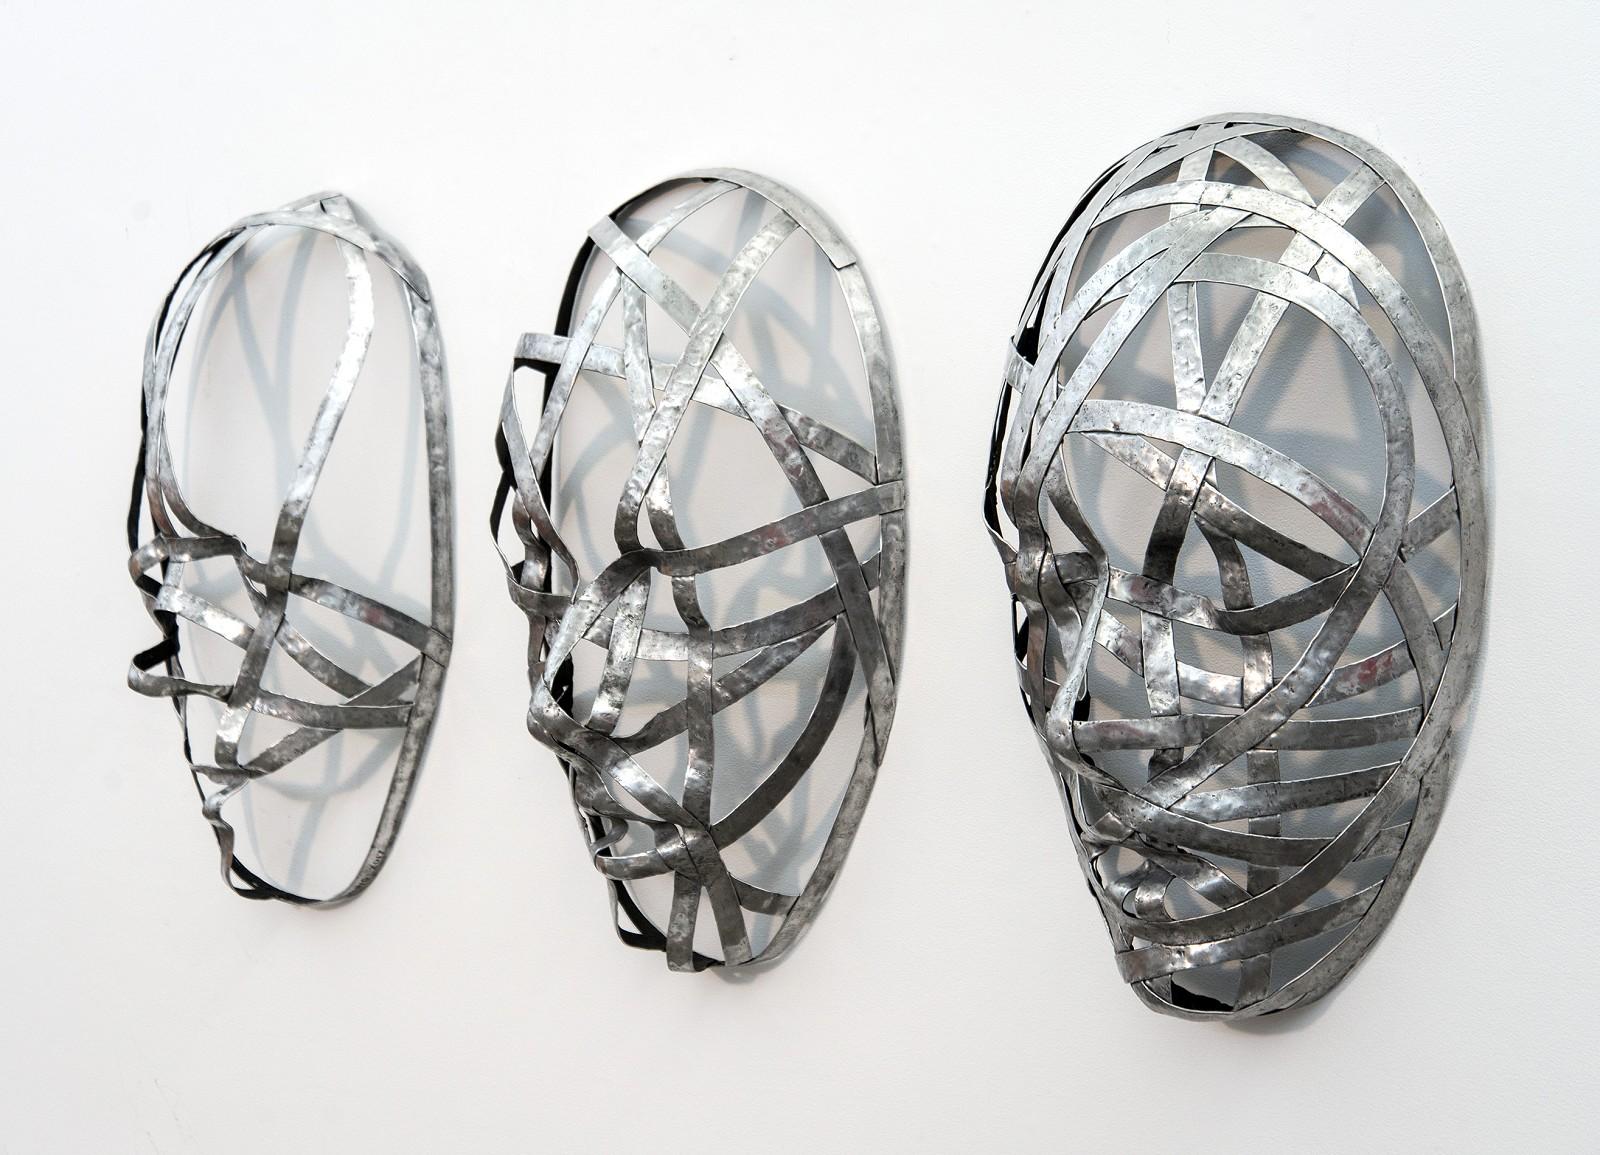 D'étroites bandes d'aluminium sont habilement façonnées pour former les courbes et les plis de trois masques du sculpteur Dale Dunning. Les visages enveloppés d'inspiration industrielle steam-punk qui changent de droite à gauche reflètent également